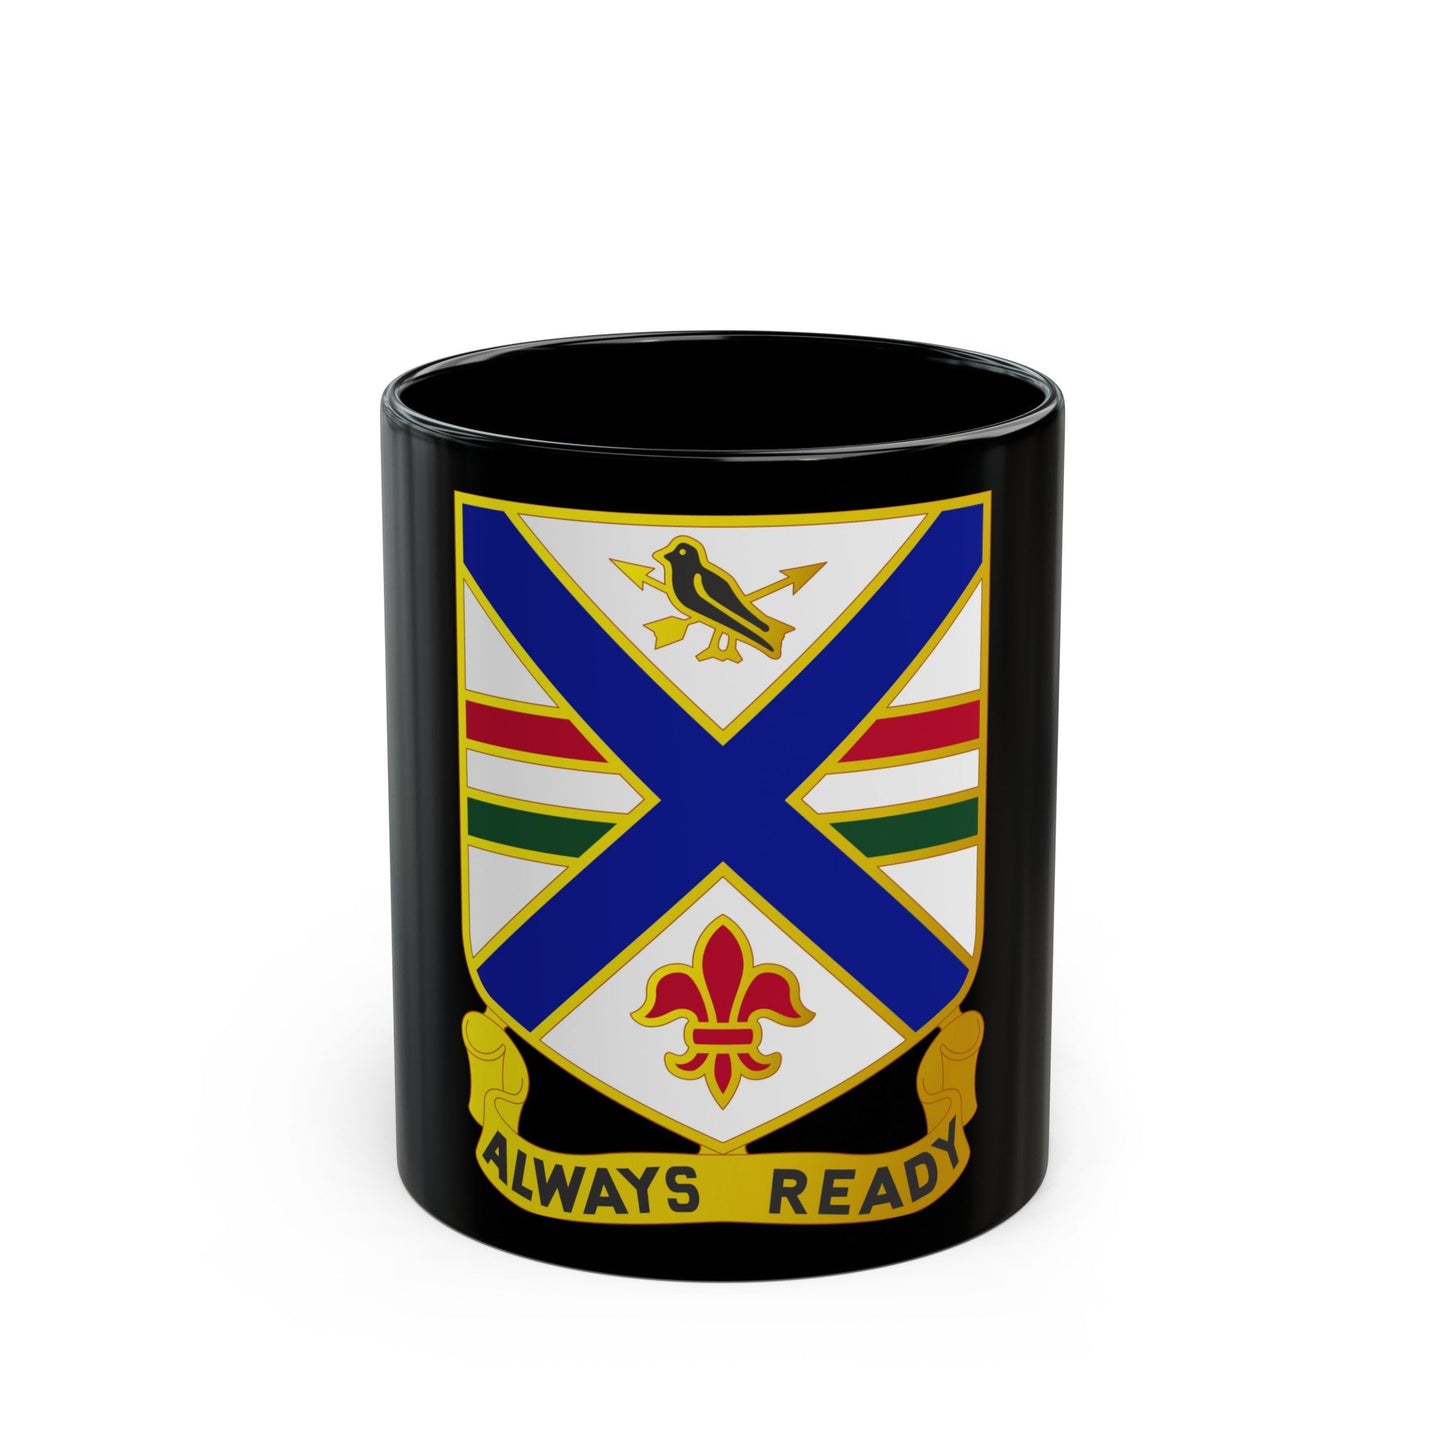 130th Infantry Regiment (U.S. Army) Black Coffee Mug